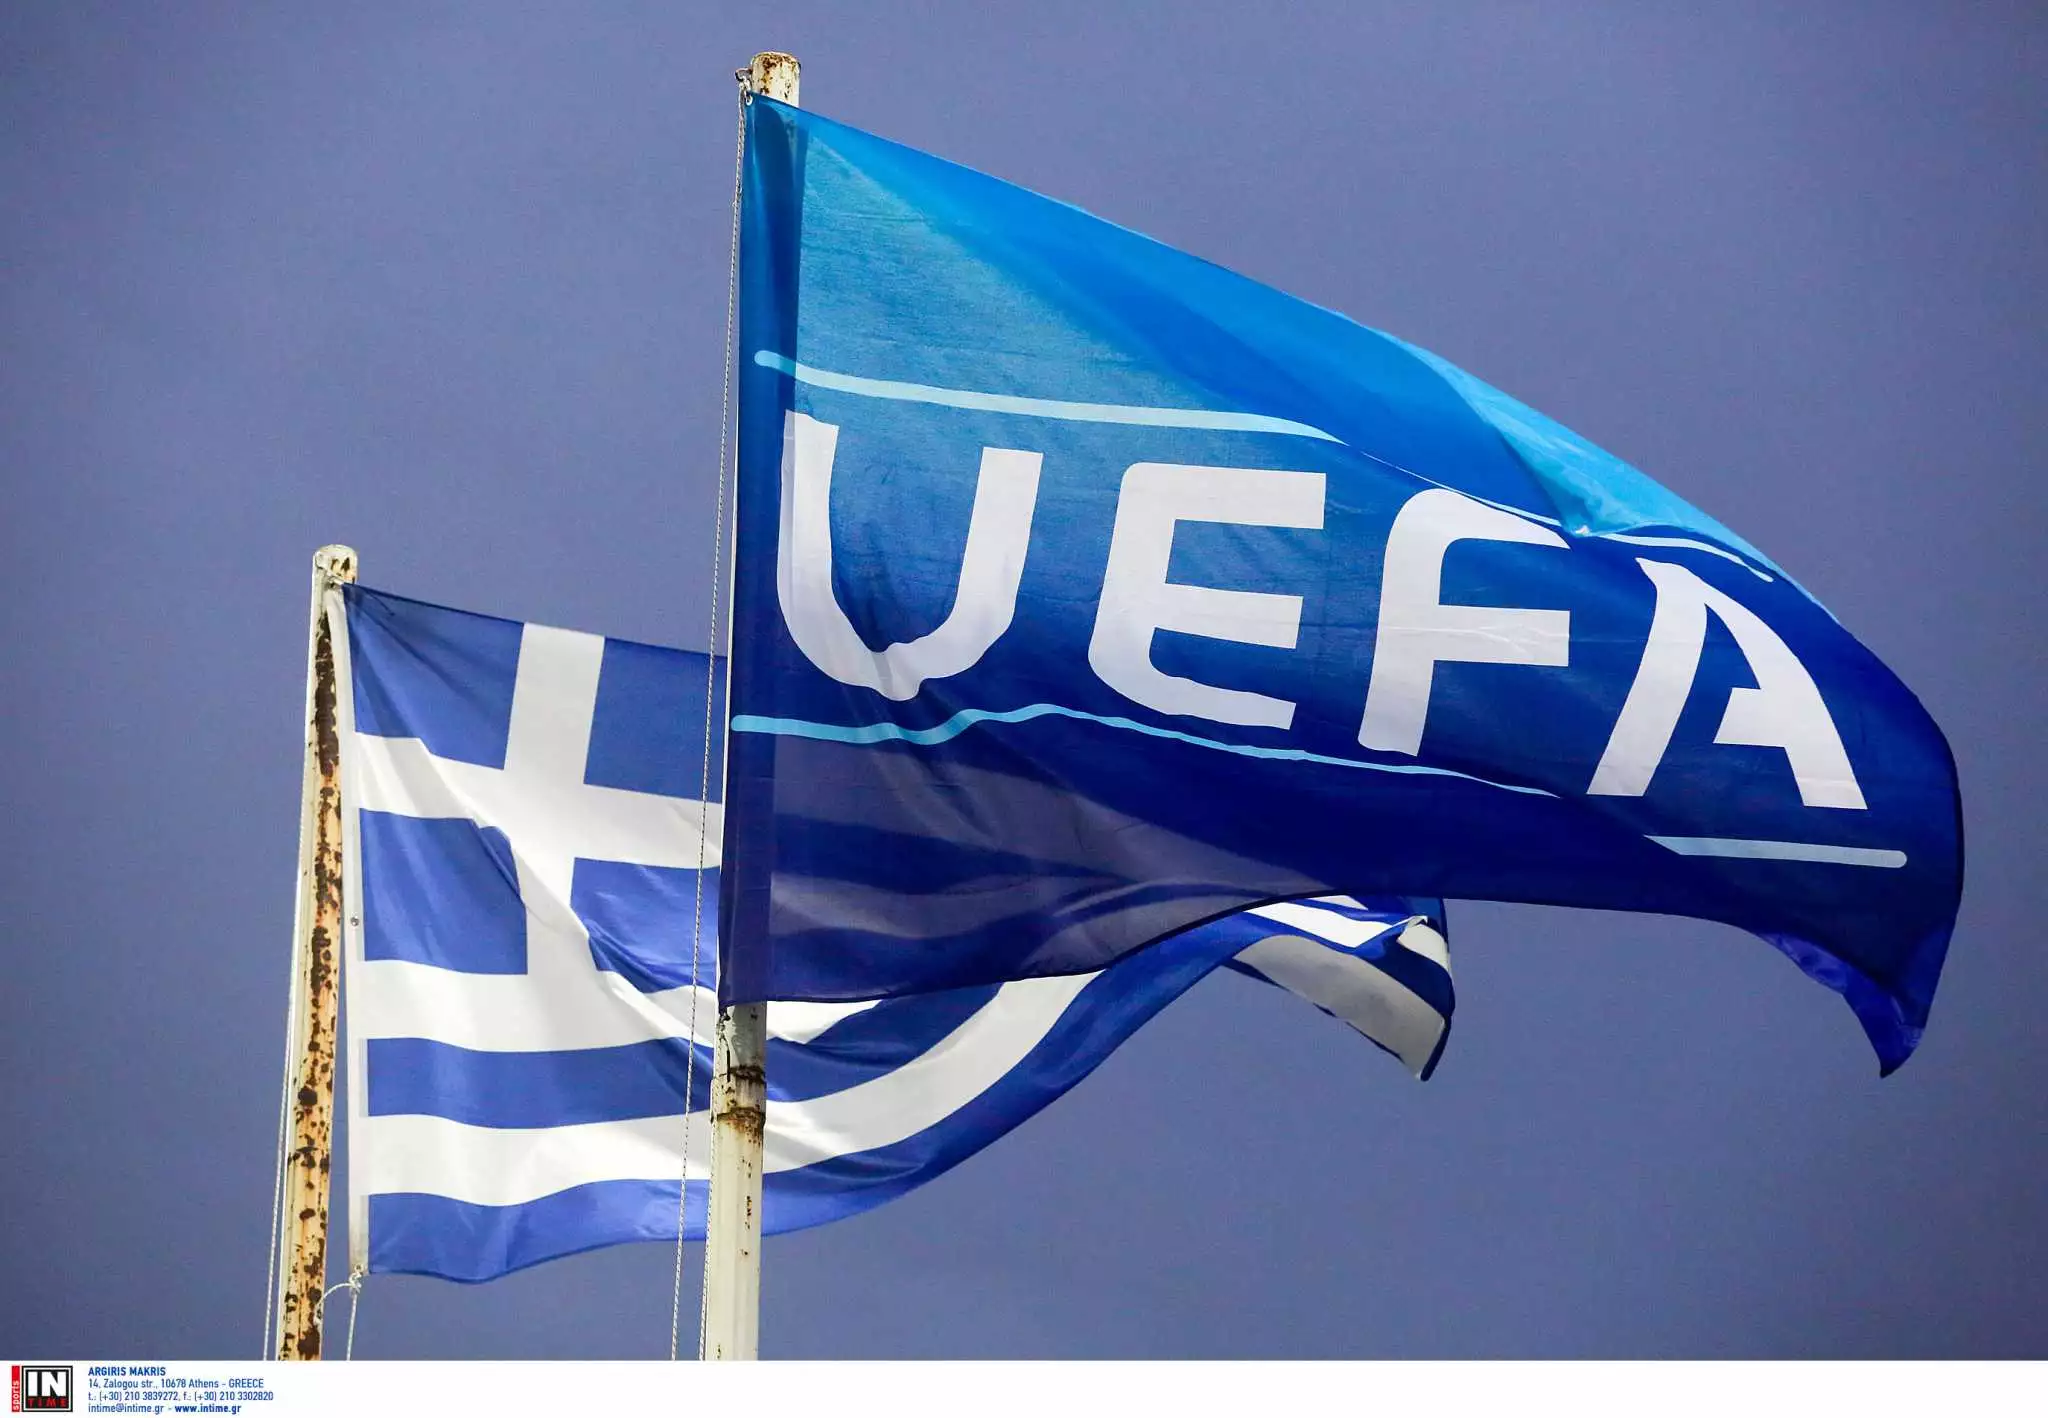 Βαθμολογία UEFA: Από τη 19η θέση η Ελλάδα ετοιμάζεται για τους ομίλους σε Europa και Conference League